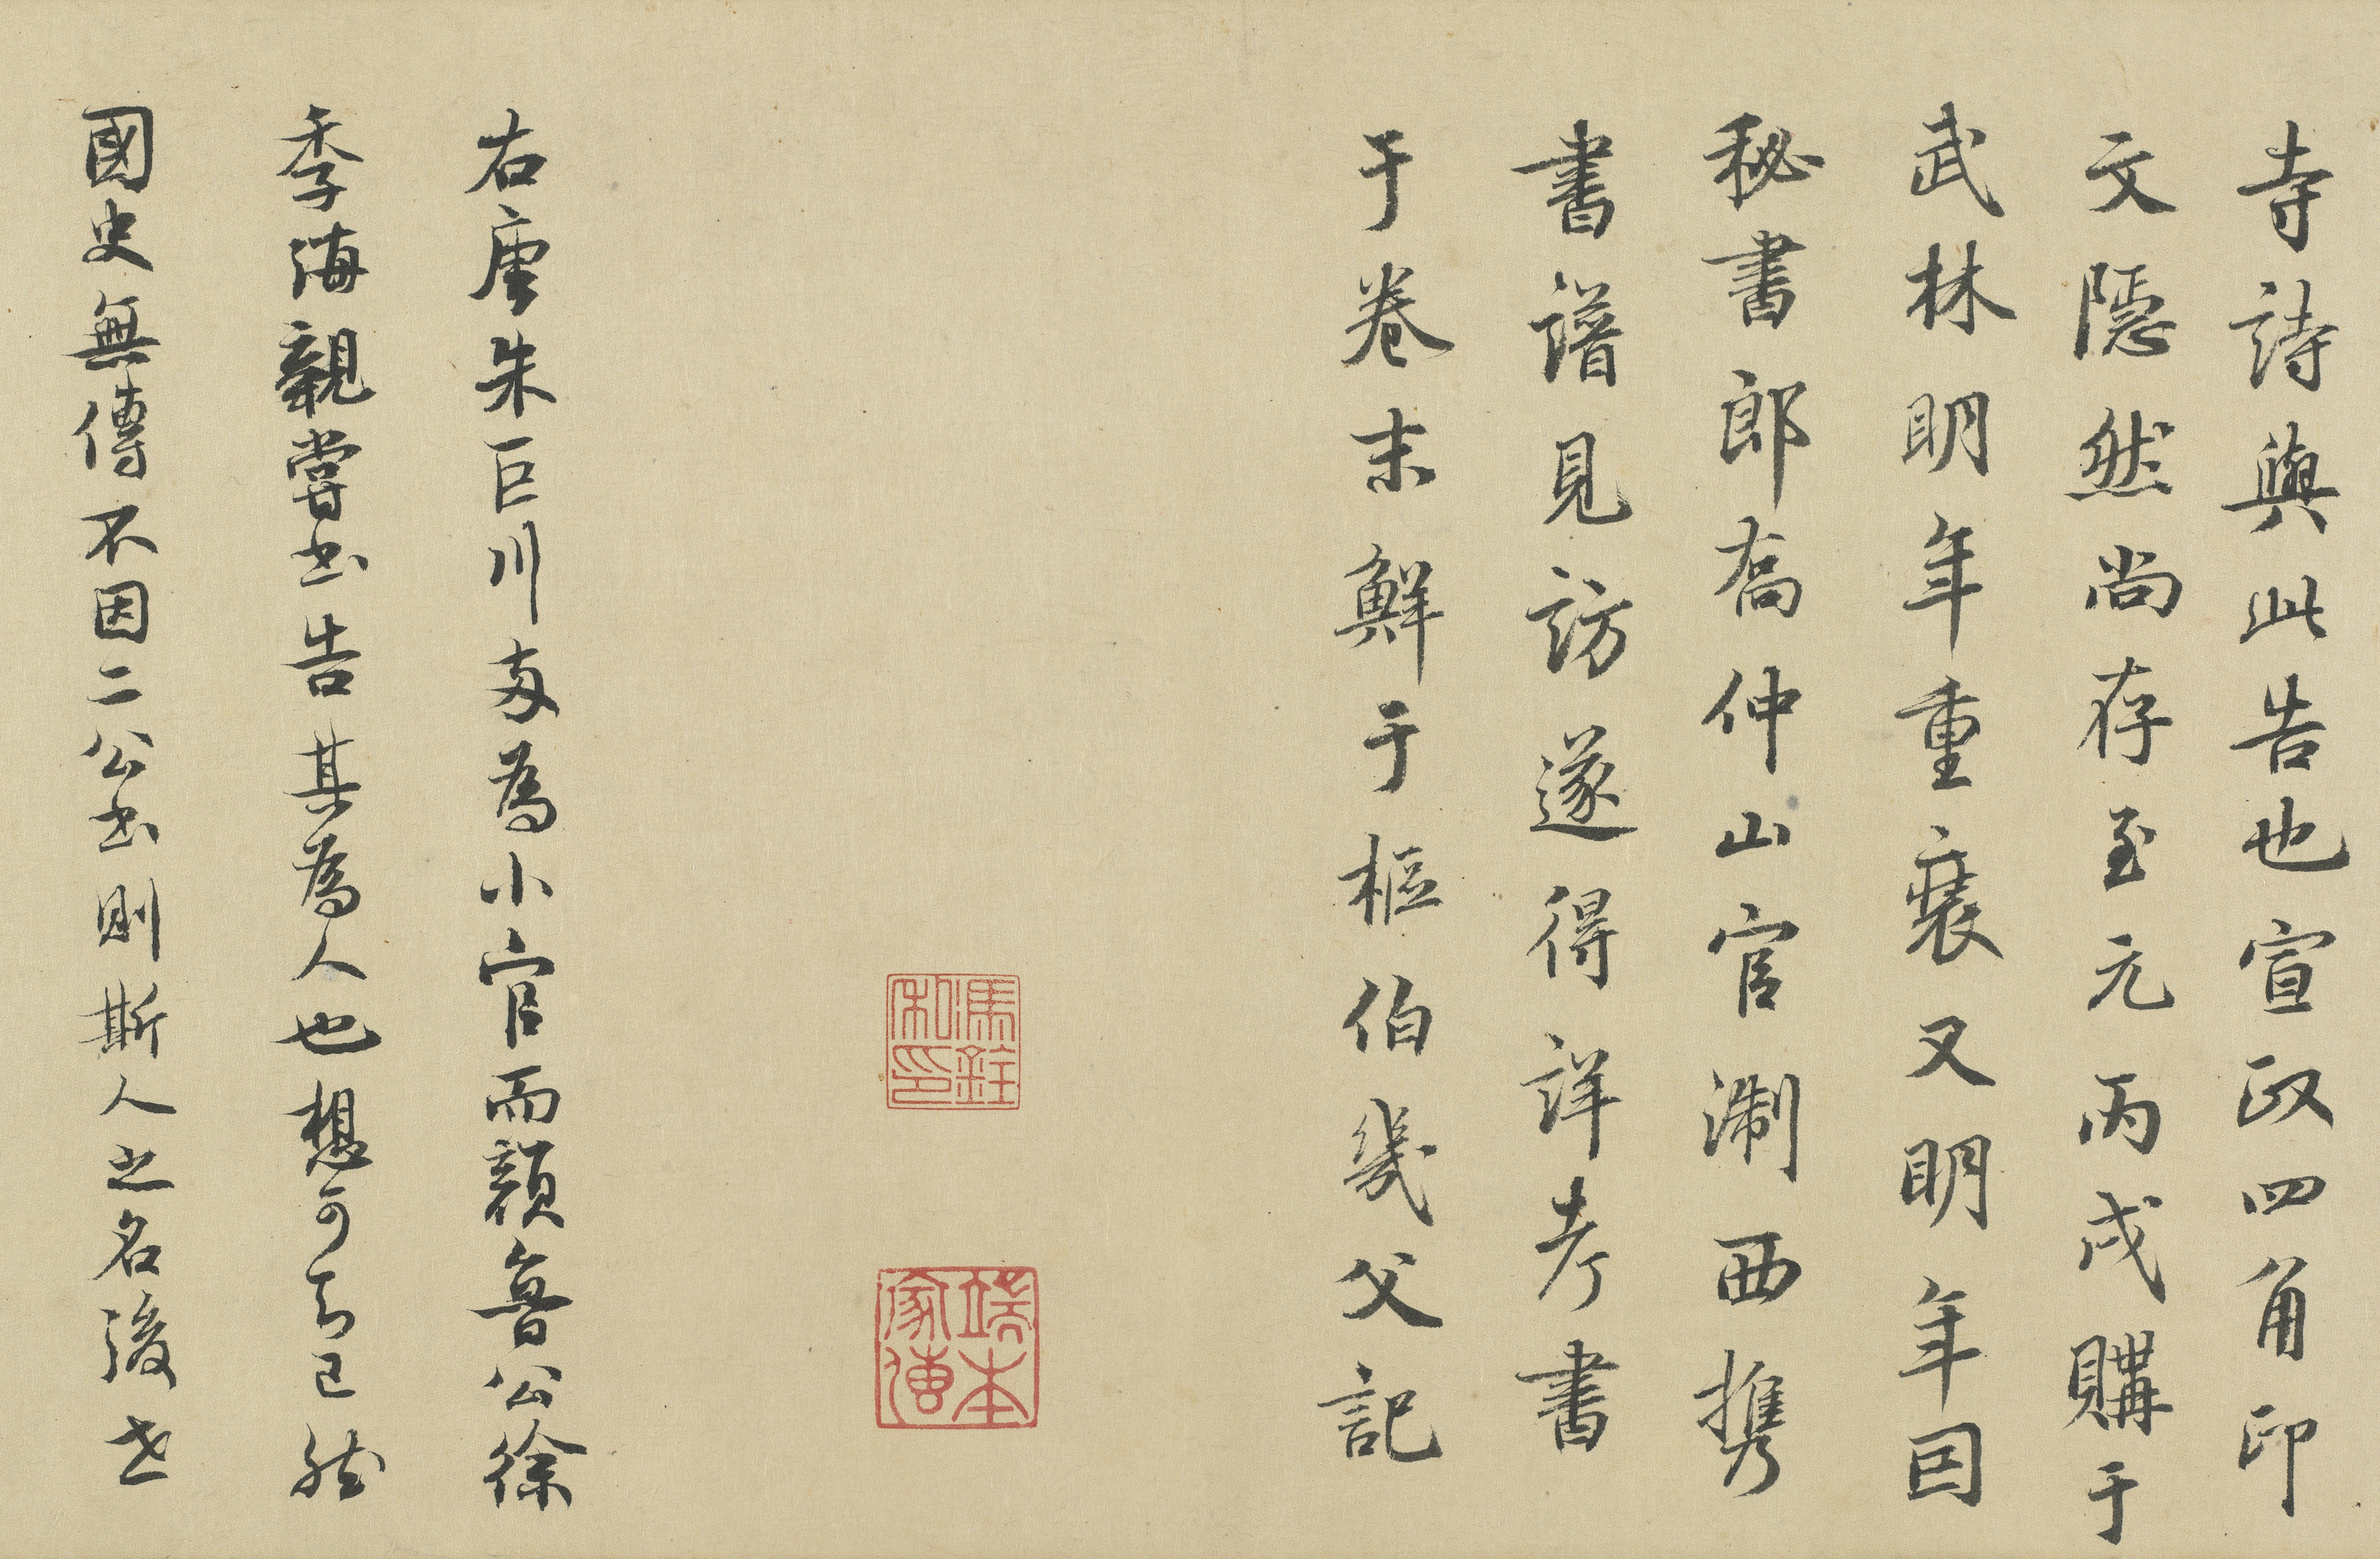 Certificate for Zhu Juchuan